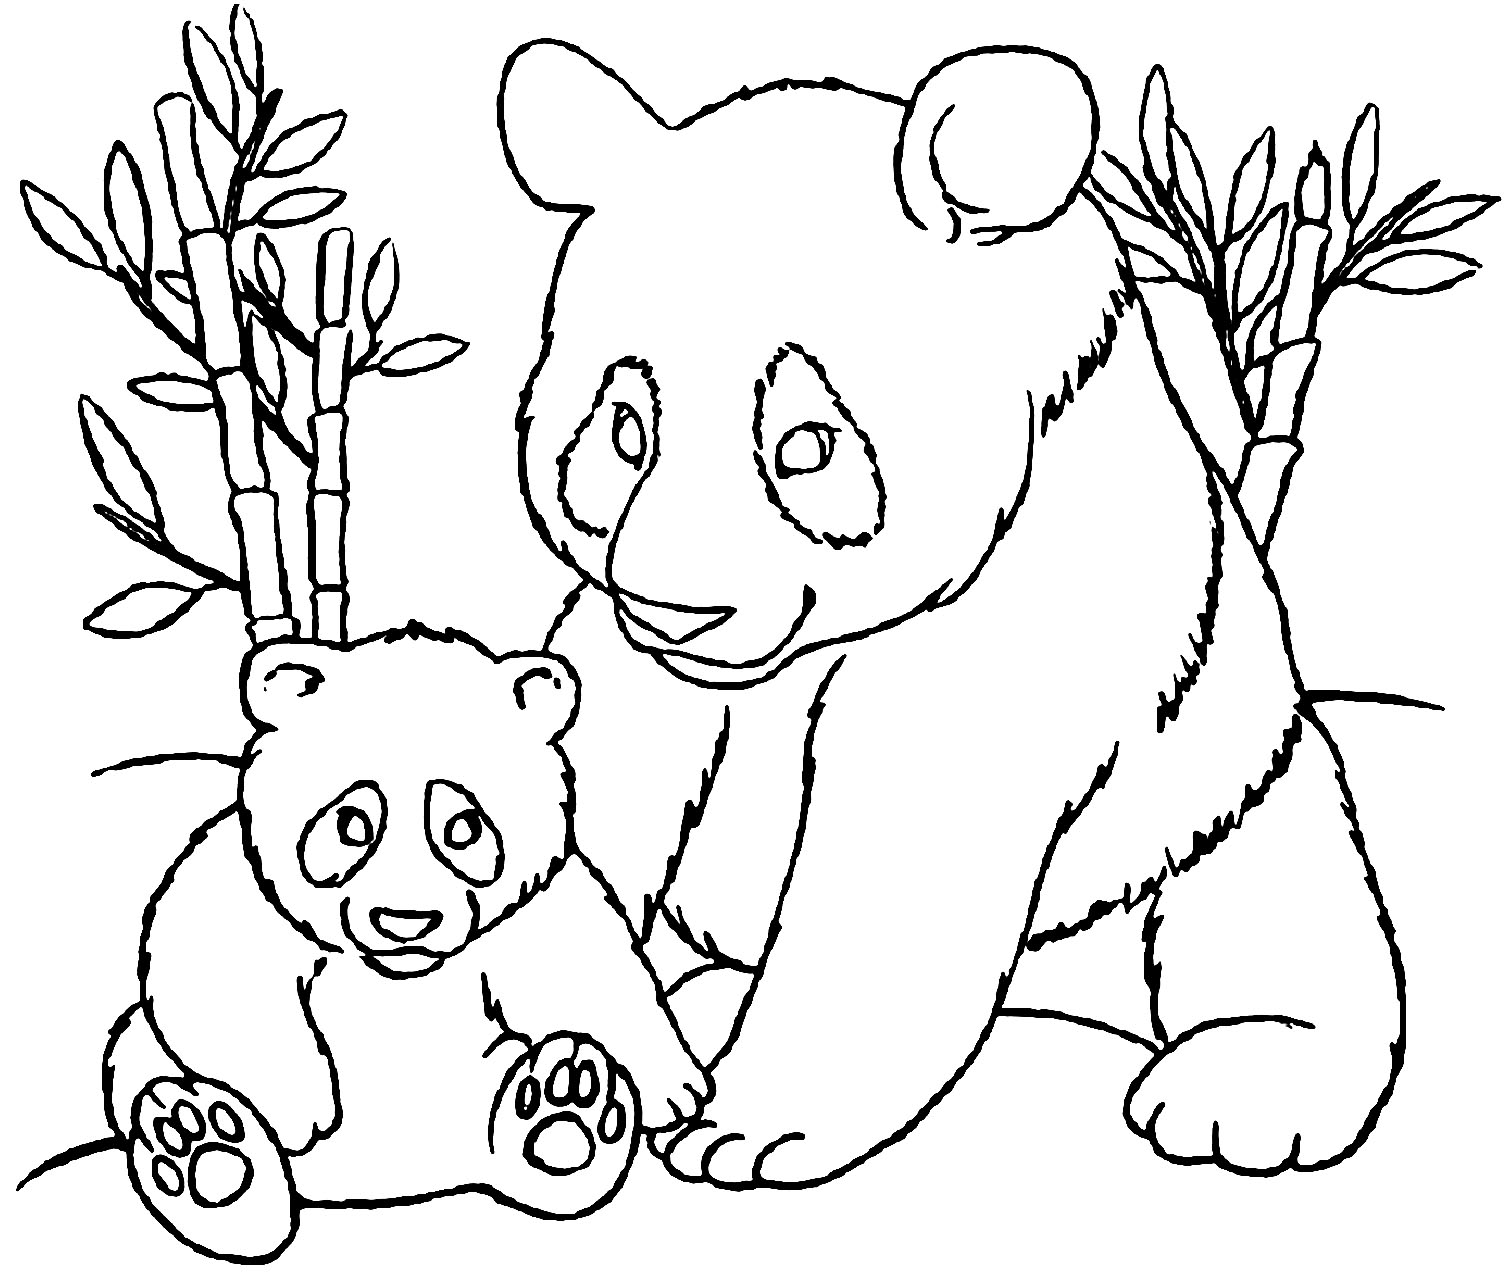 Dessin de panda à colorier, facile pour enfants